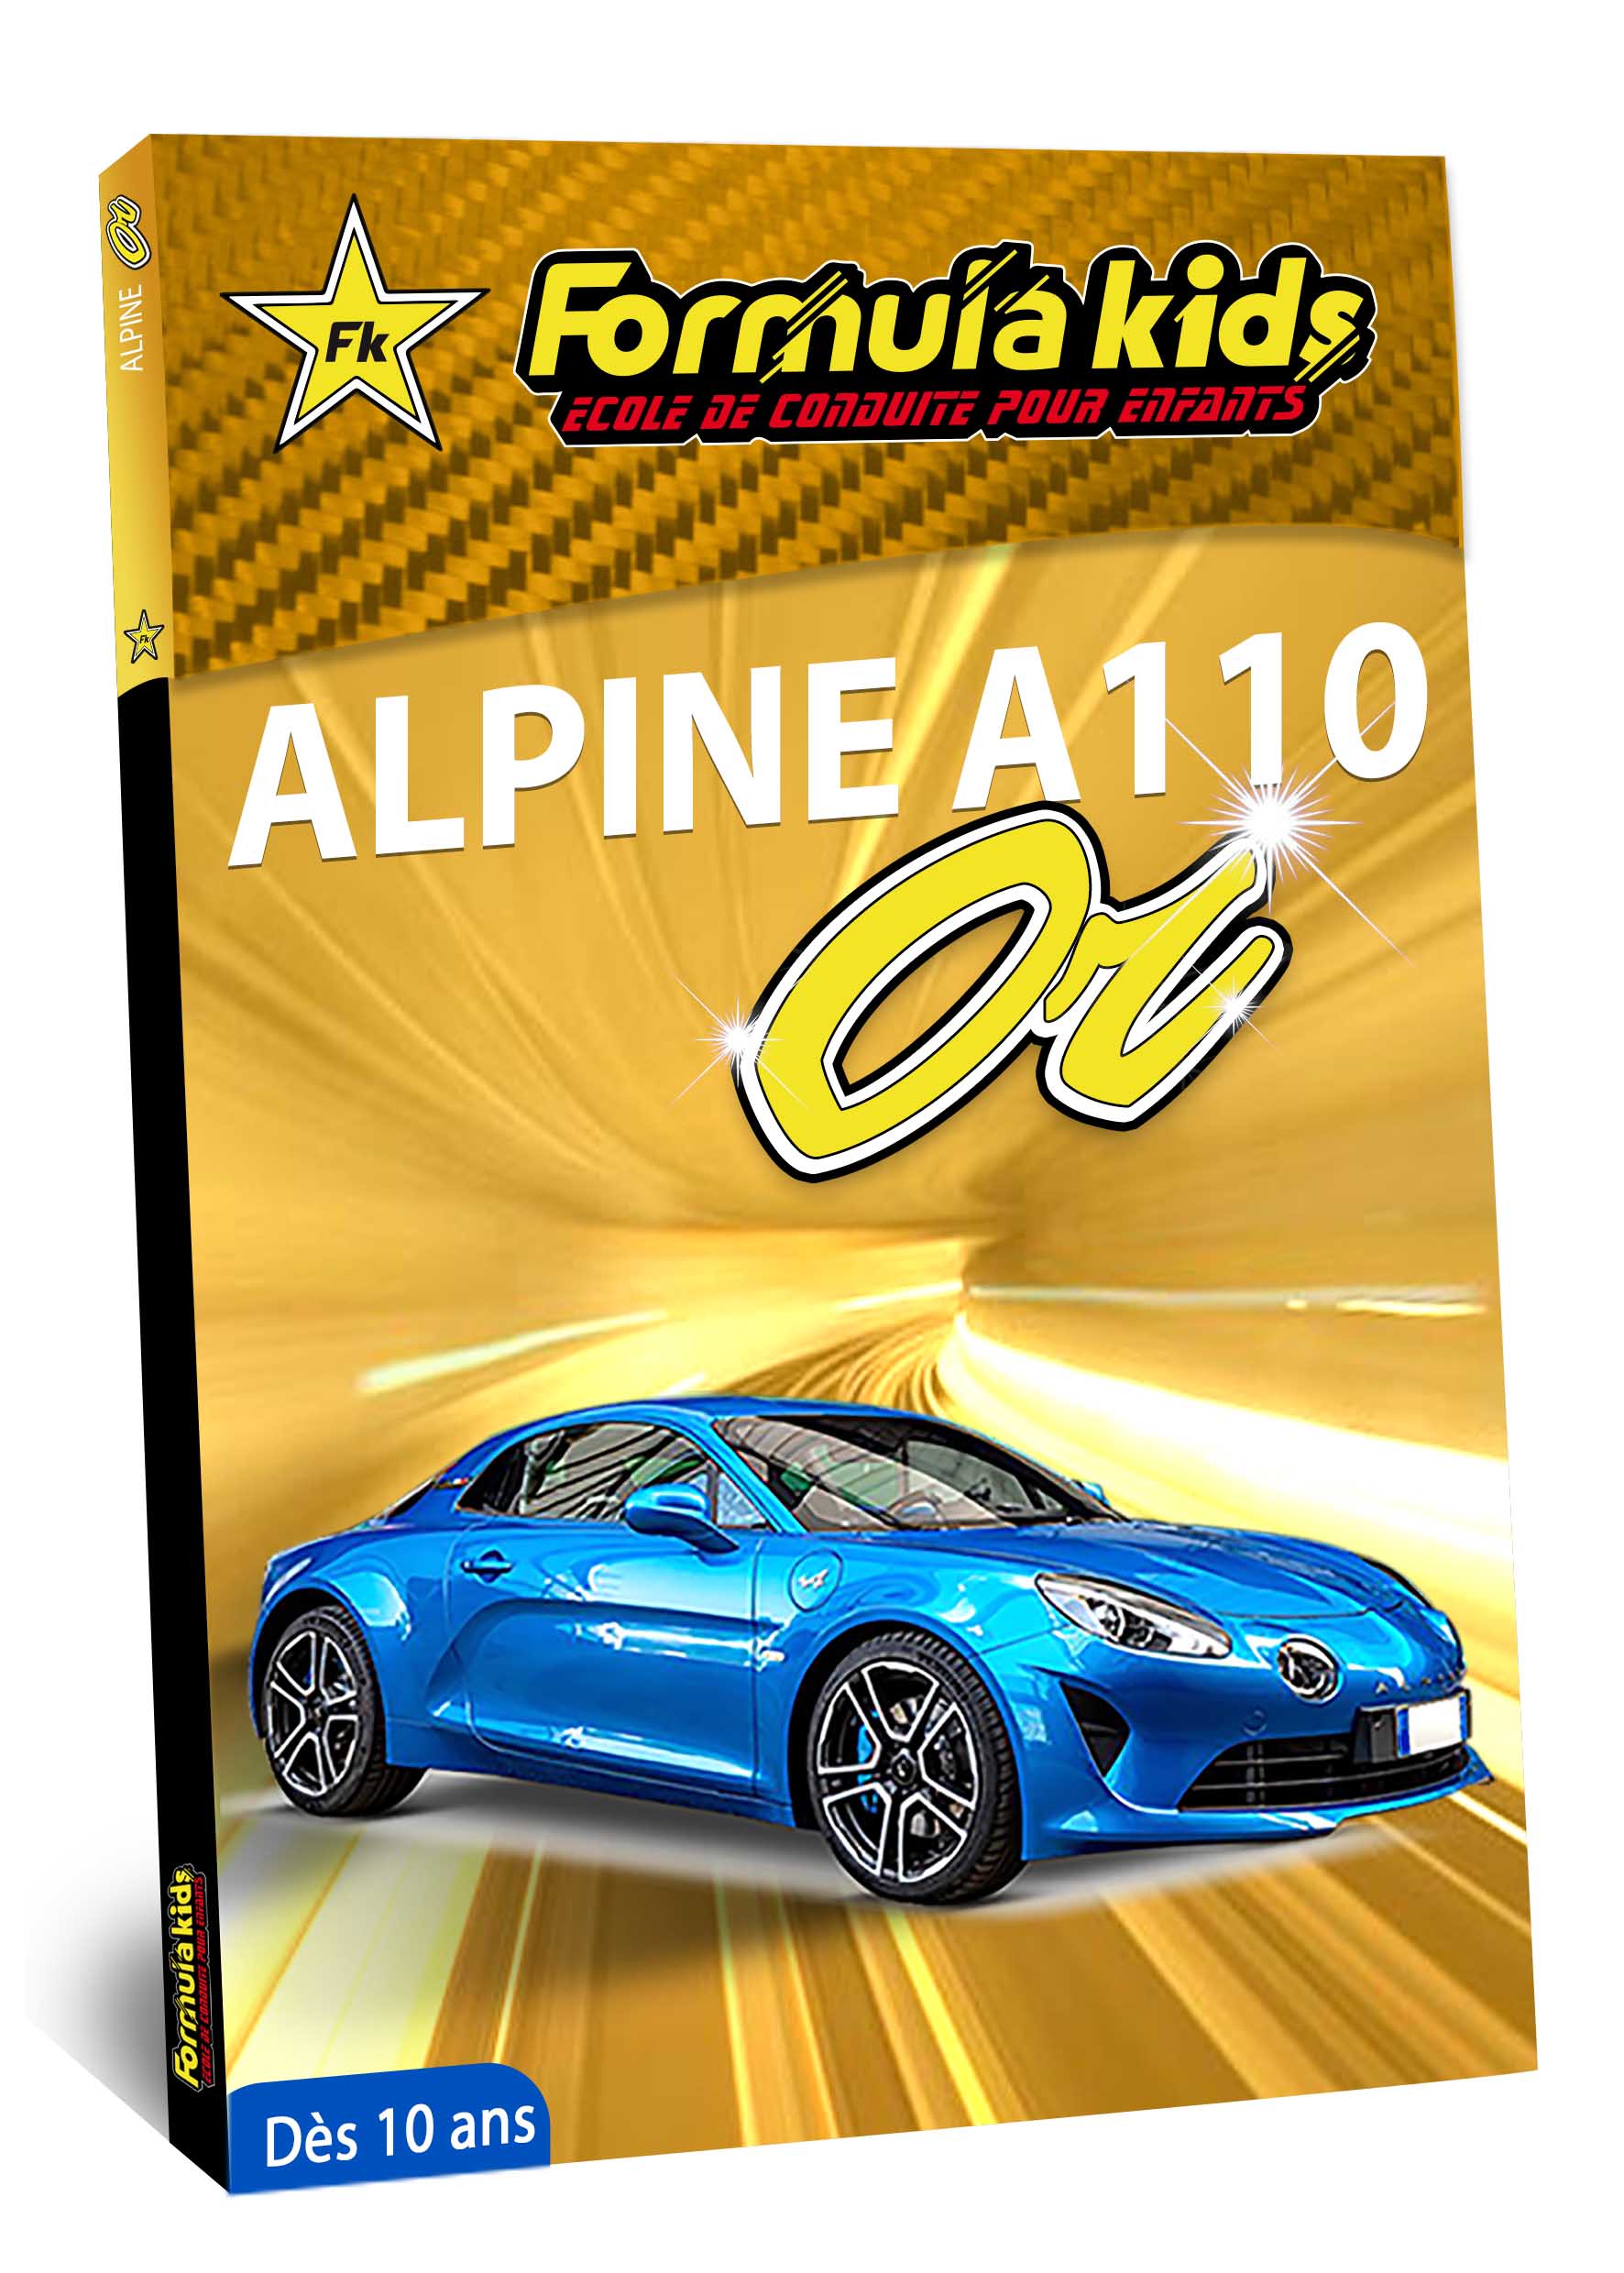 Alpine A110 OR - Conduire une Alpine A110 dès 7 ans - Formula Kids - Stage de conduite enfant - Stage de pilotage sur As'Phalte - Stage Junior - Conduire une A110 dès 7 ans - Formula Kids - Stage de conduite enfant - Stage de pilotage sur As'Phalte - Stage Junior - Cadeau - Idée anniversaire - Smart Box - Idée Cadeau - Loisir - Famille - Pilotage - - Pilotage GT - Pilotage enfant - Alpine A110 S - A110 - ALPINE - A310 -